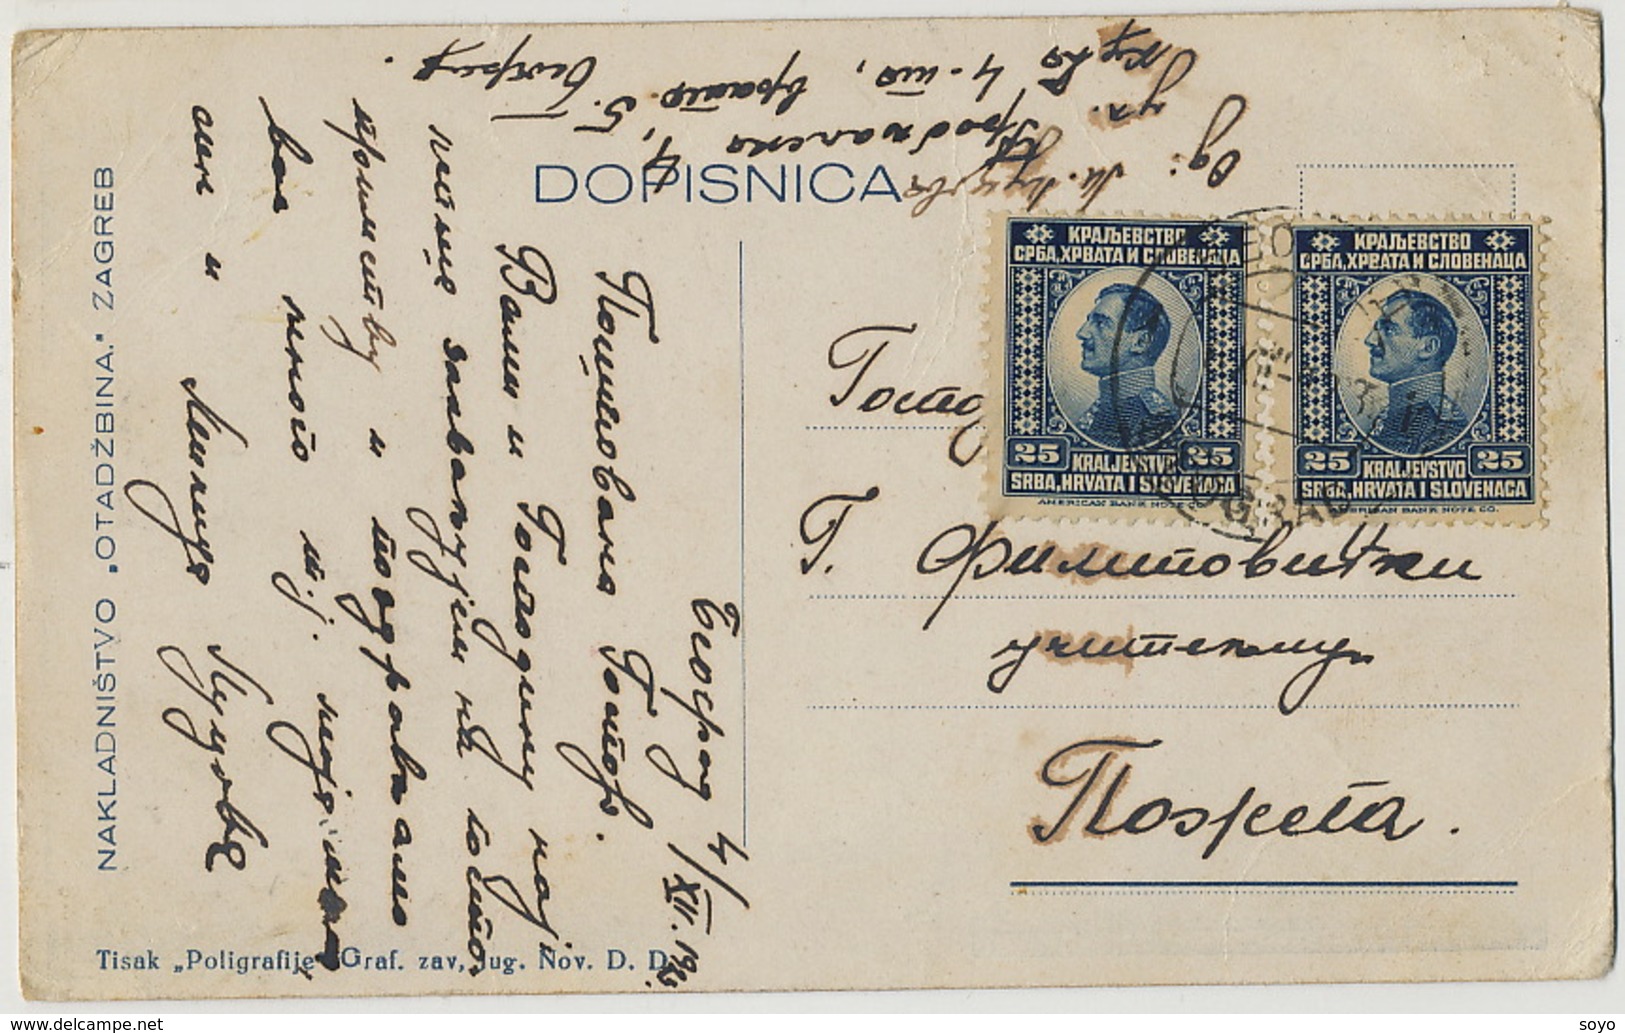 Billets De Banque Dinar Yougoslavie Banknotes P. Used - Monnaies (représentations)